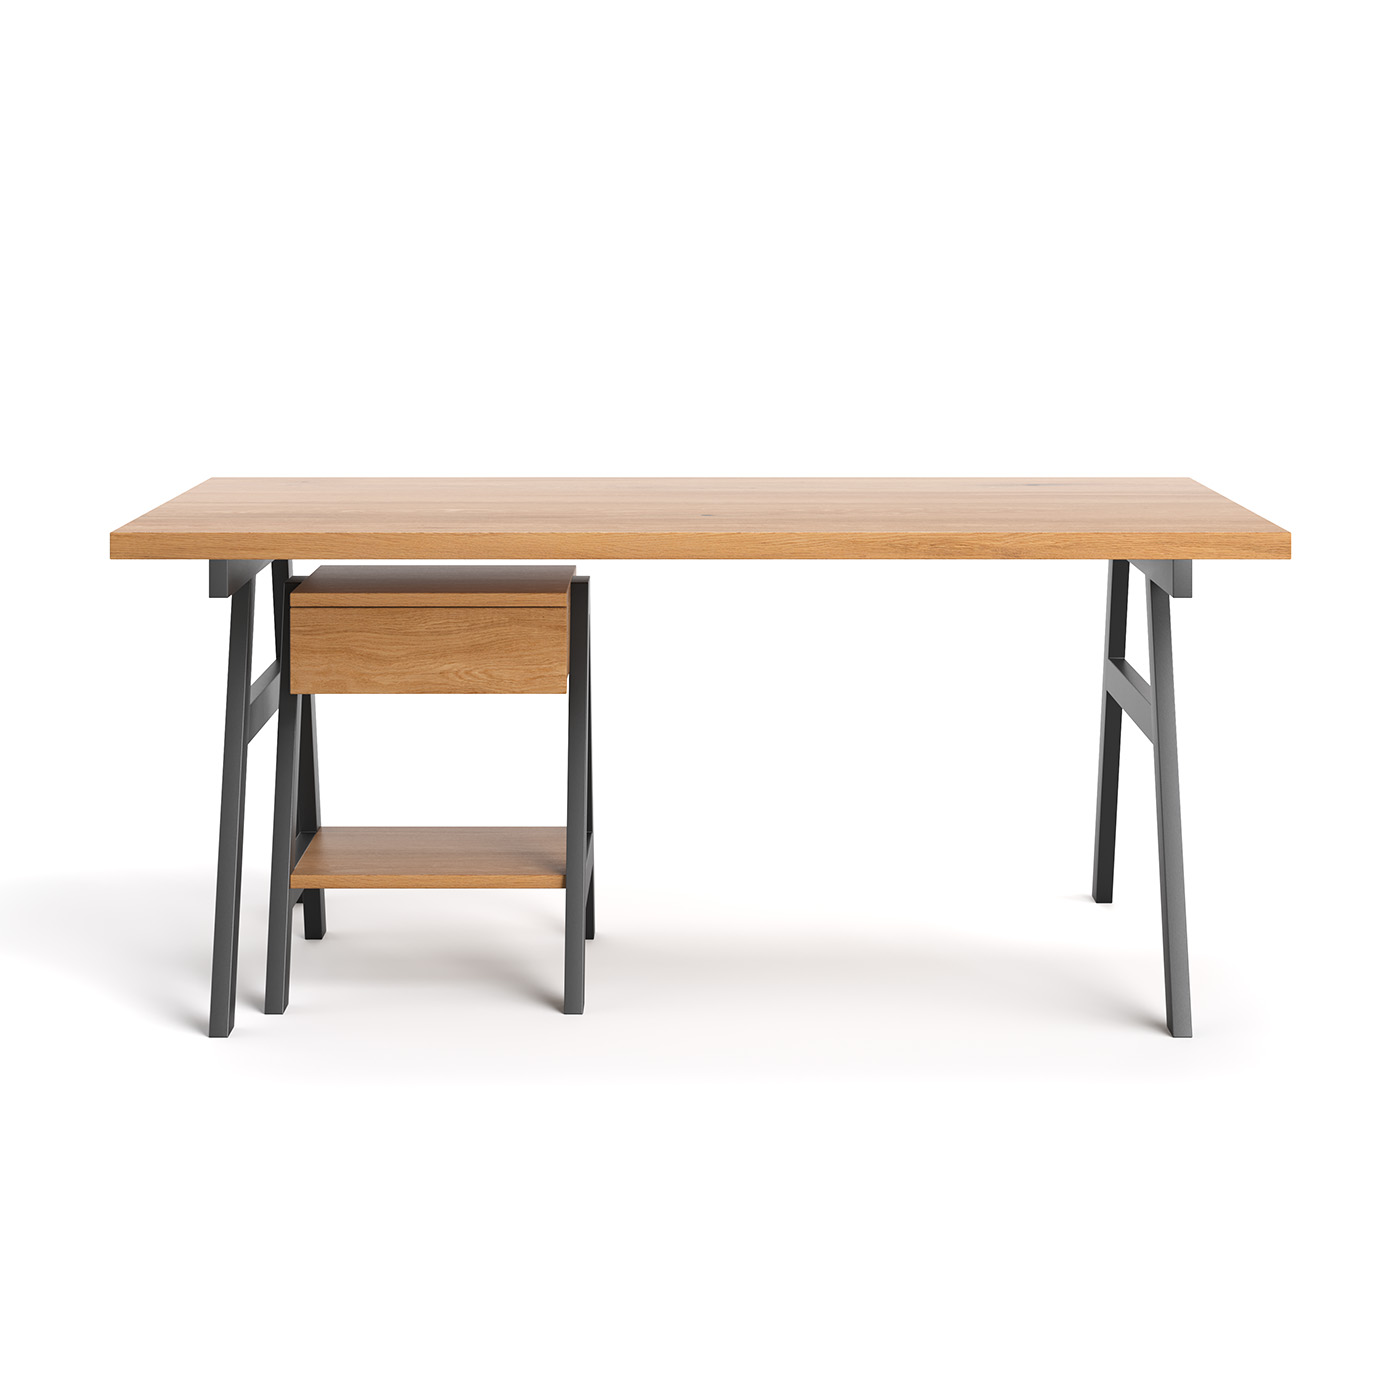 ATELIER DESK - Desks from TEAM 7